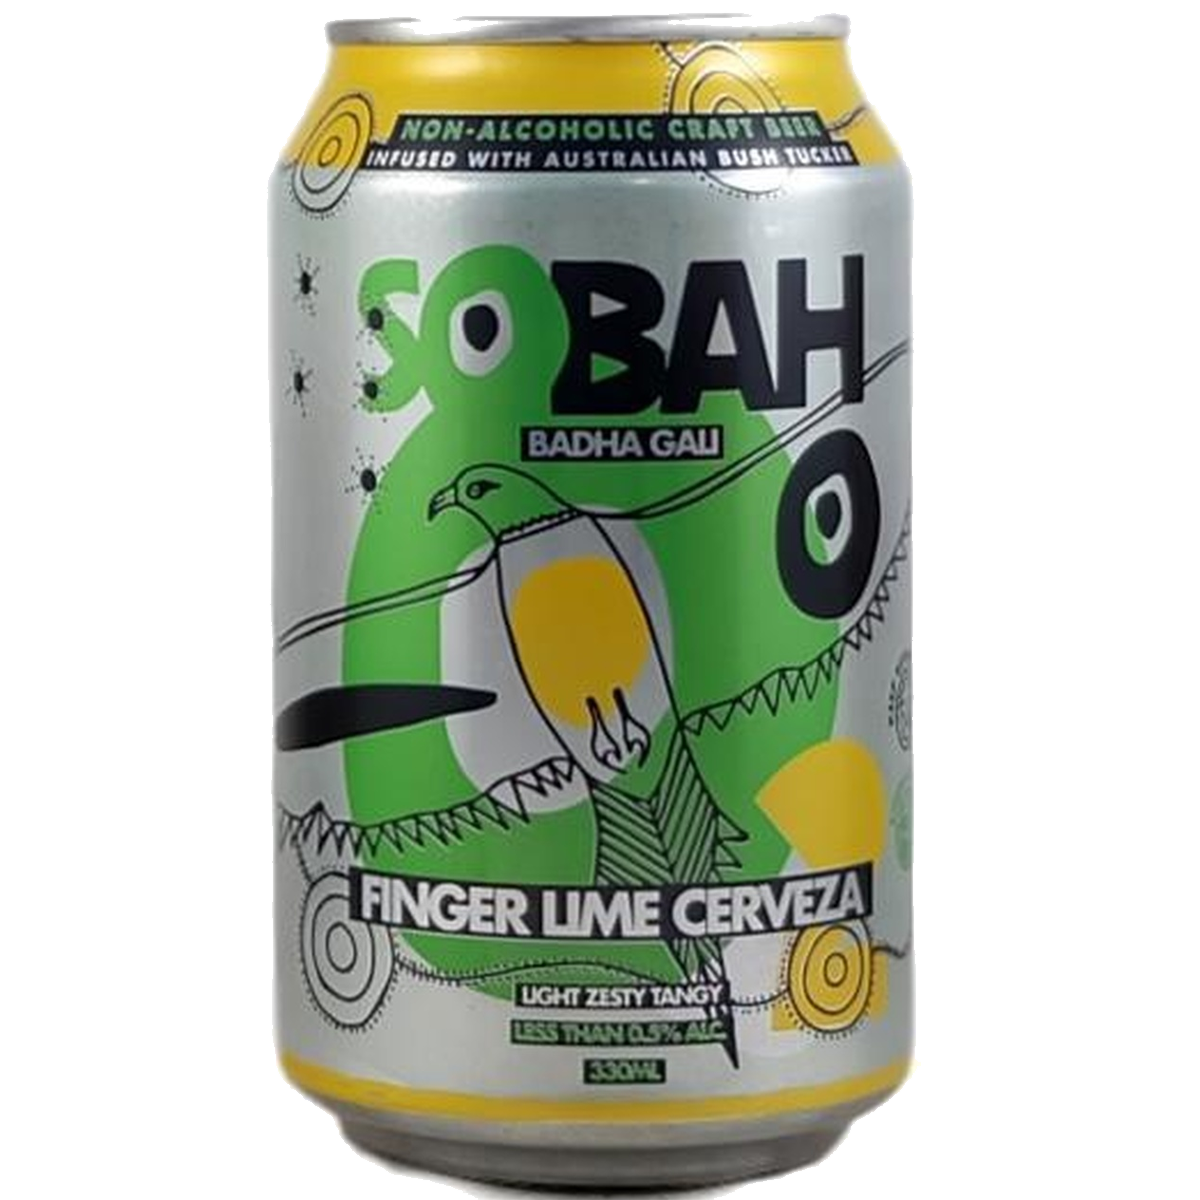 Finger Lime Cerveza - Sobah #2